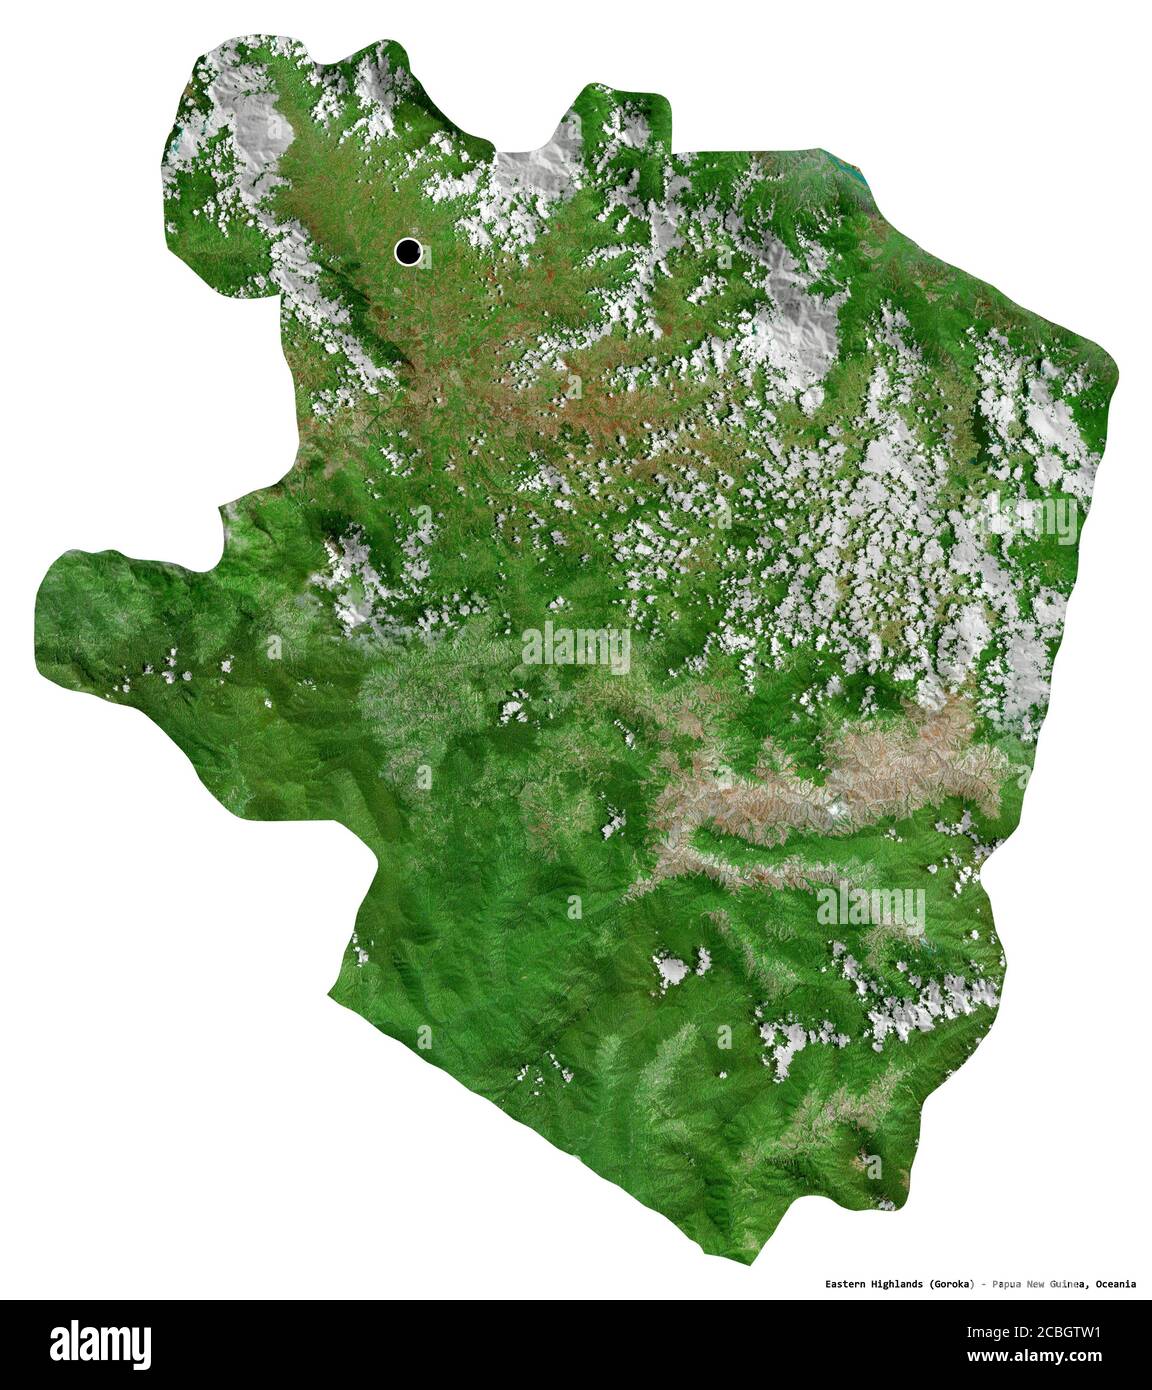 Form der östlichen Highlands, Provinz Papua-Neuguinea, mit seiner Hauptstadt isoliert auf weißem Hintergrund. Satellitenbilder. 3D-Rendering Stockfoto